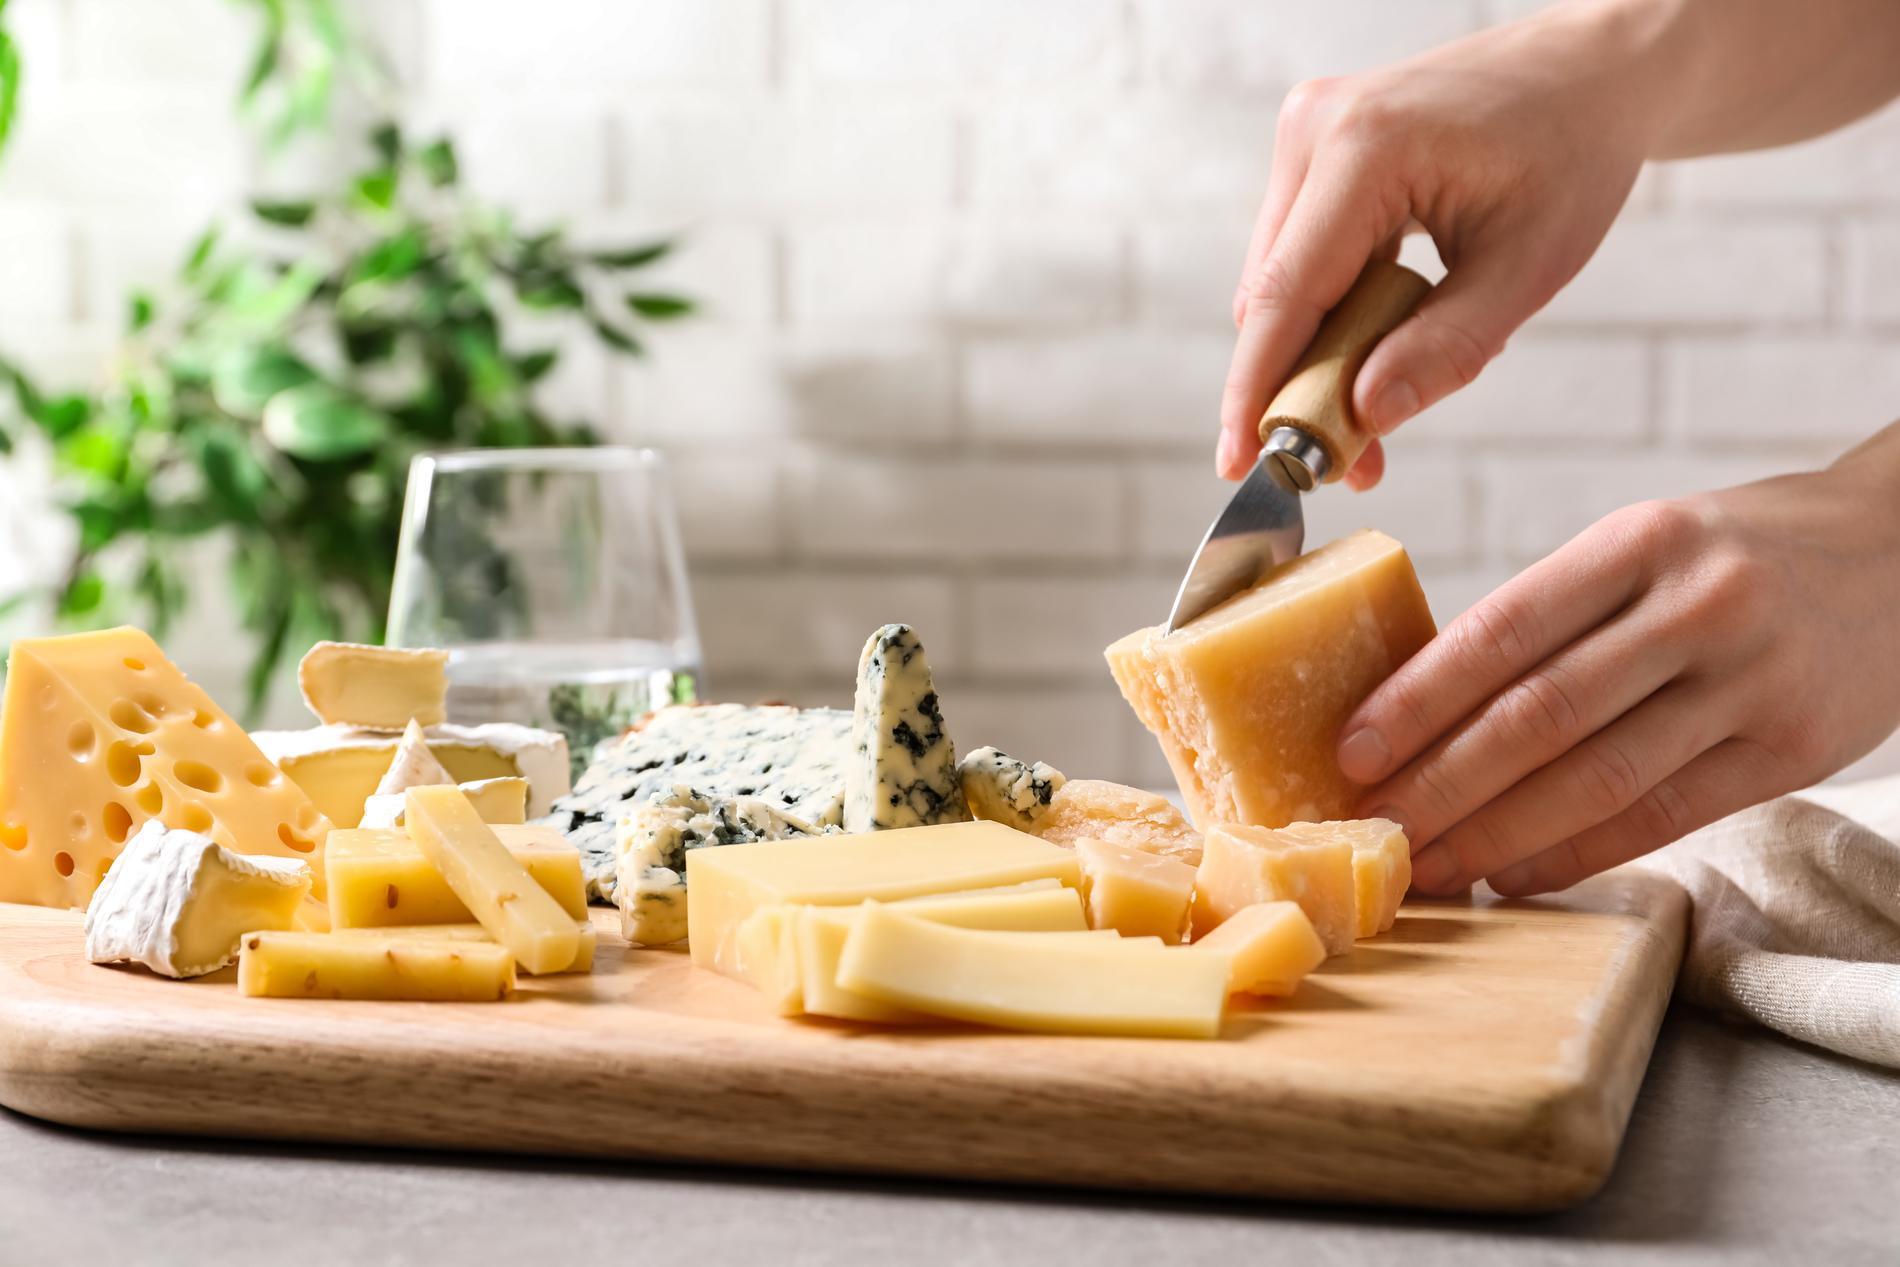 Det finnes omtrent ingen bevis på at ost forårsaker vektøkning, ifølge forsker. 